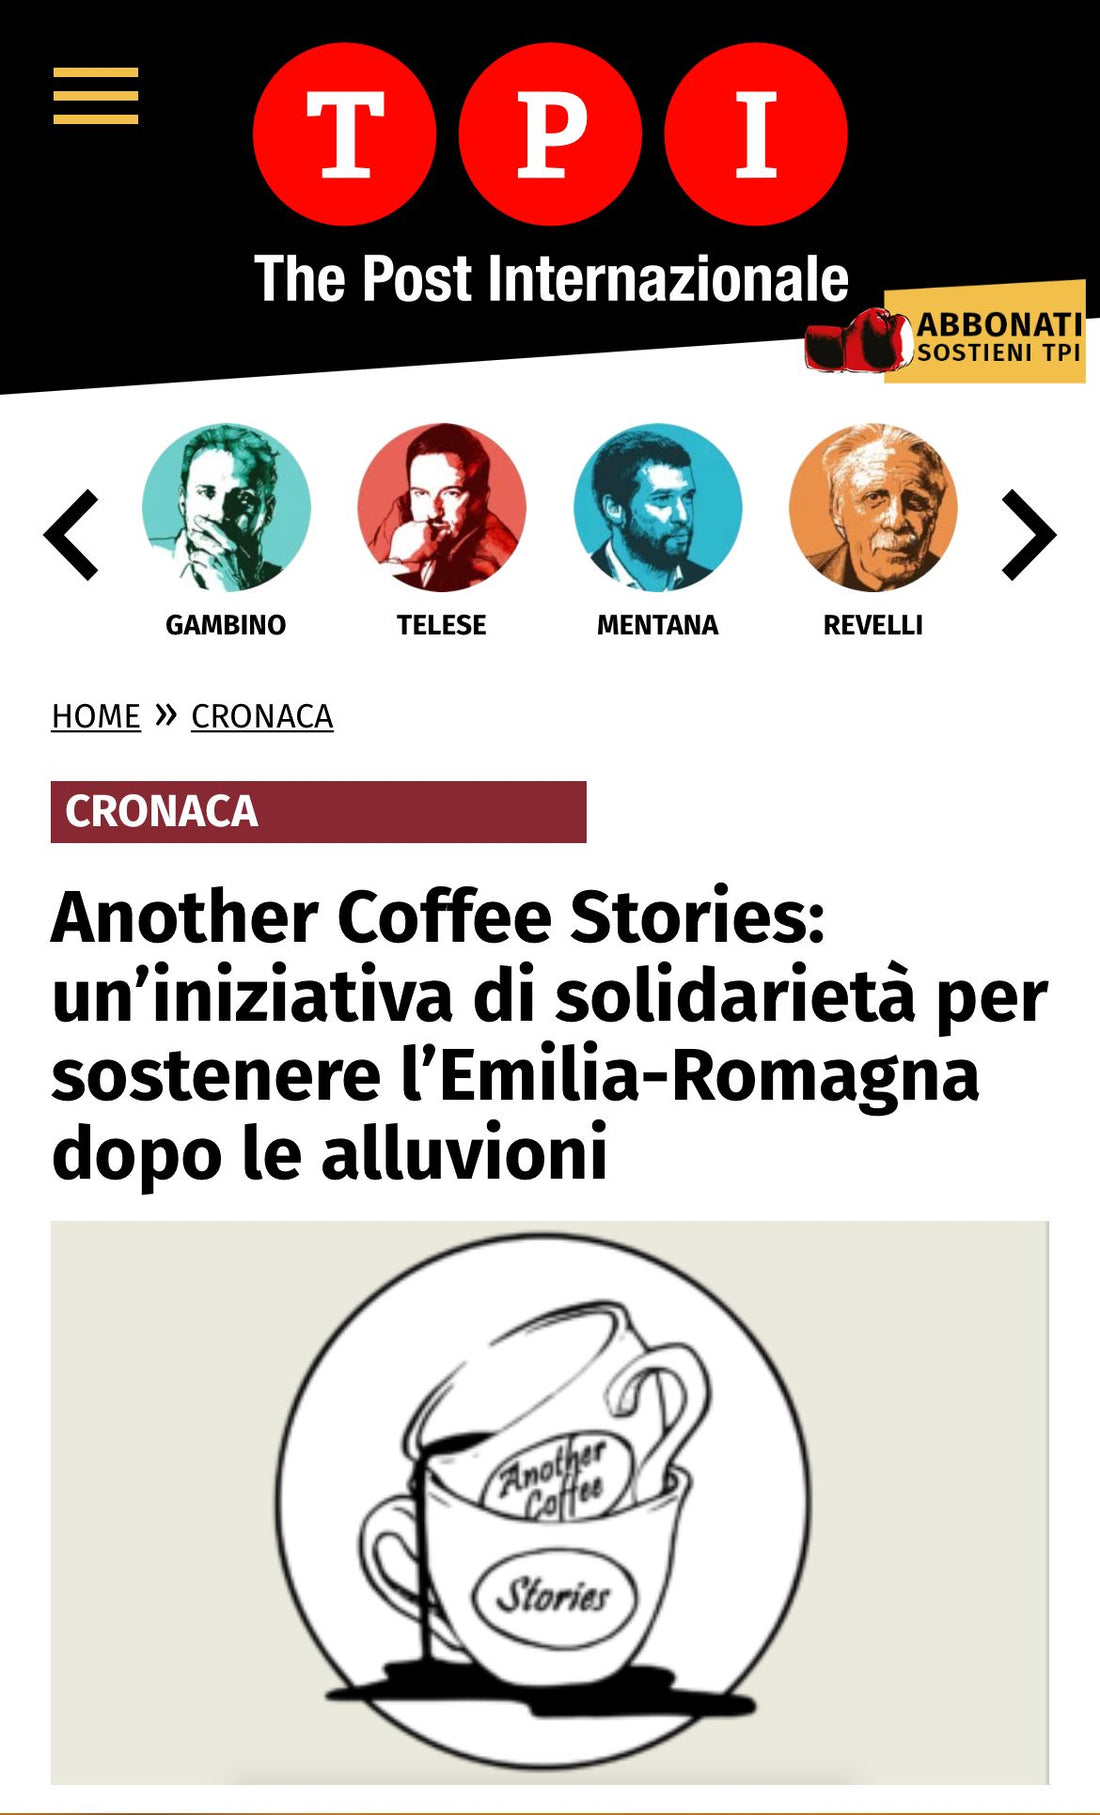 Another Coffee Stories: un’iniziativa di solidarietà per sostenere l’Emilia-Romagna dopo le alluvioni